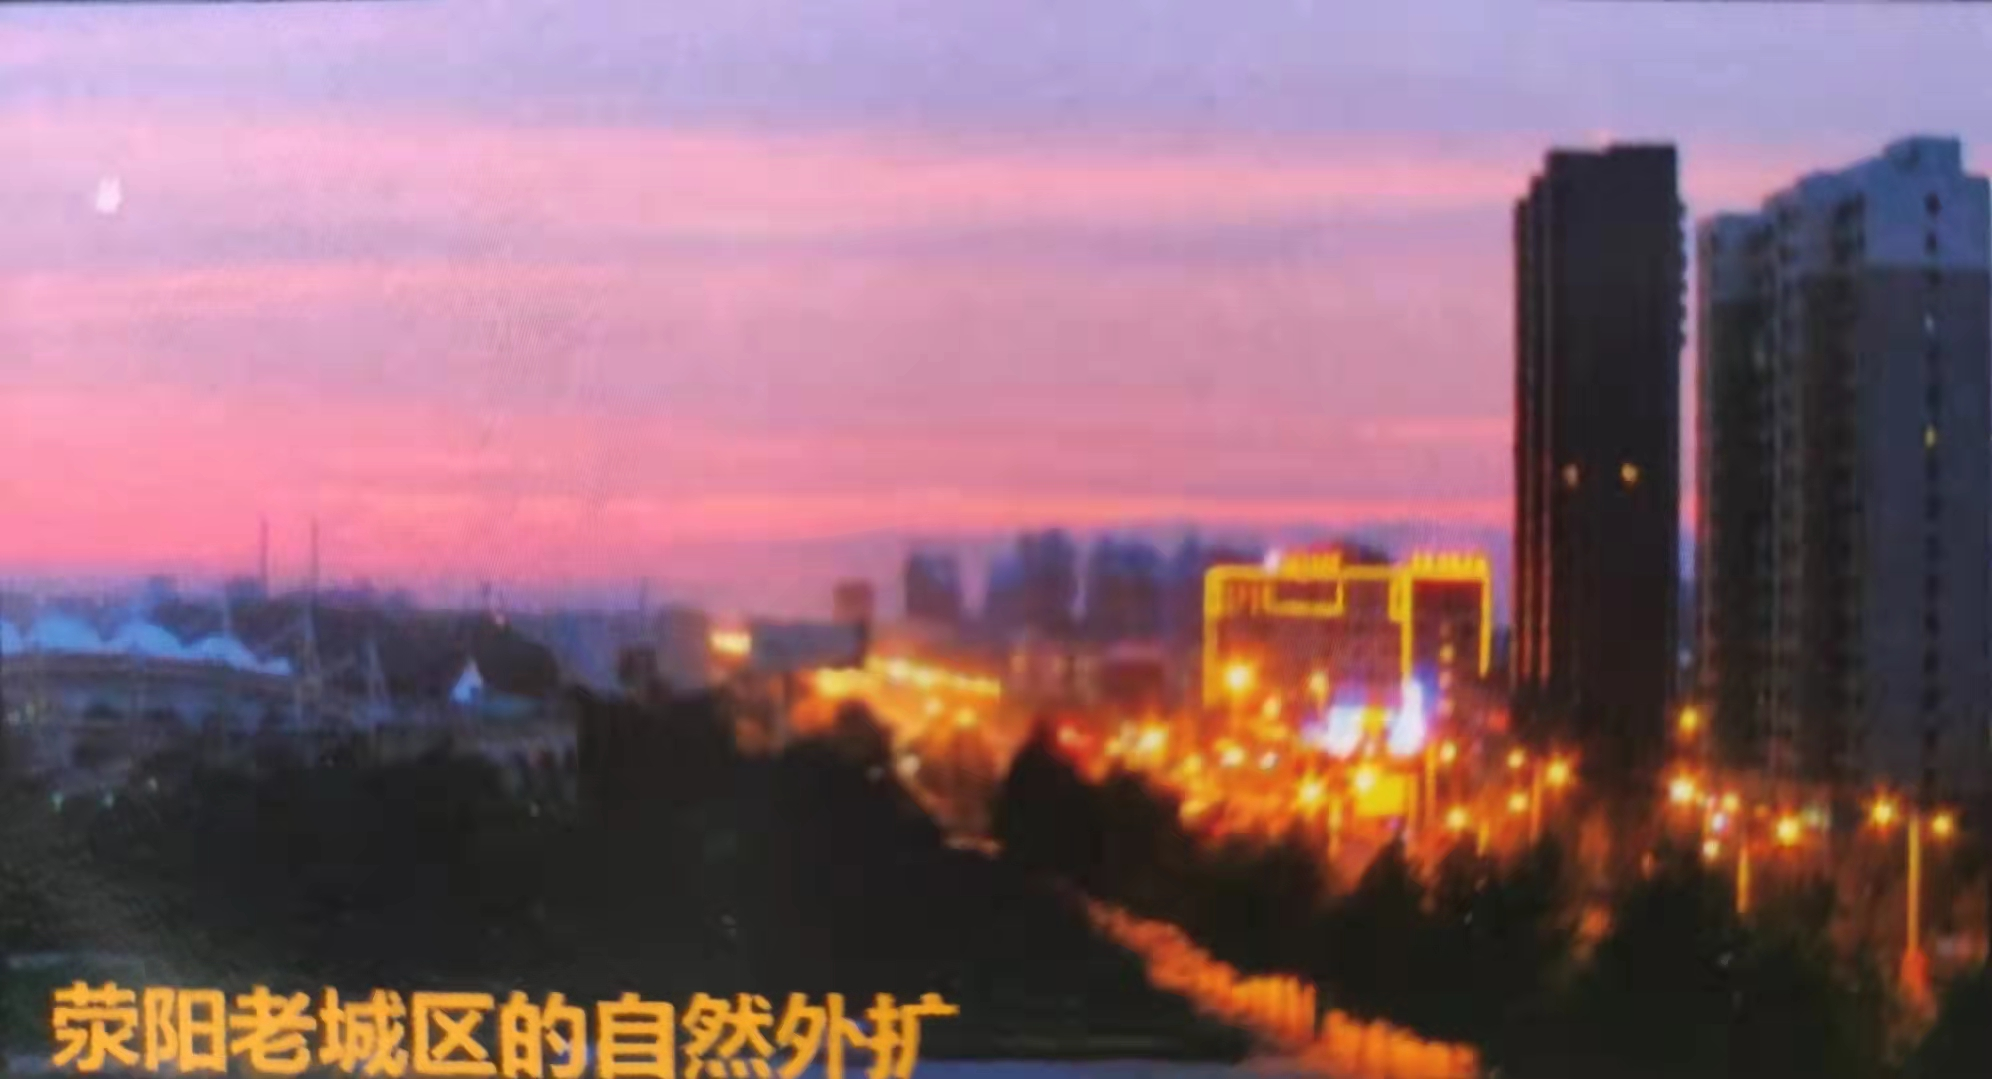 郑州区域规划价值解读——荥阳市